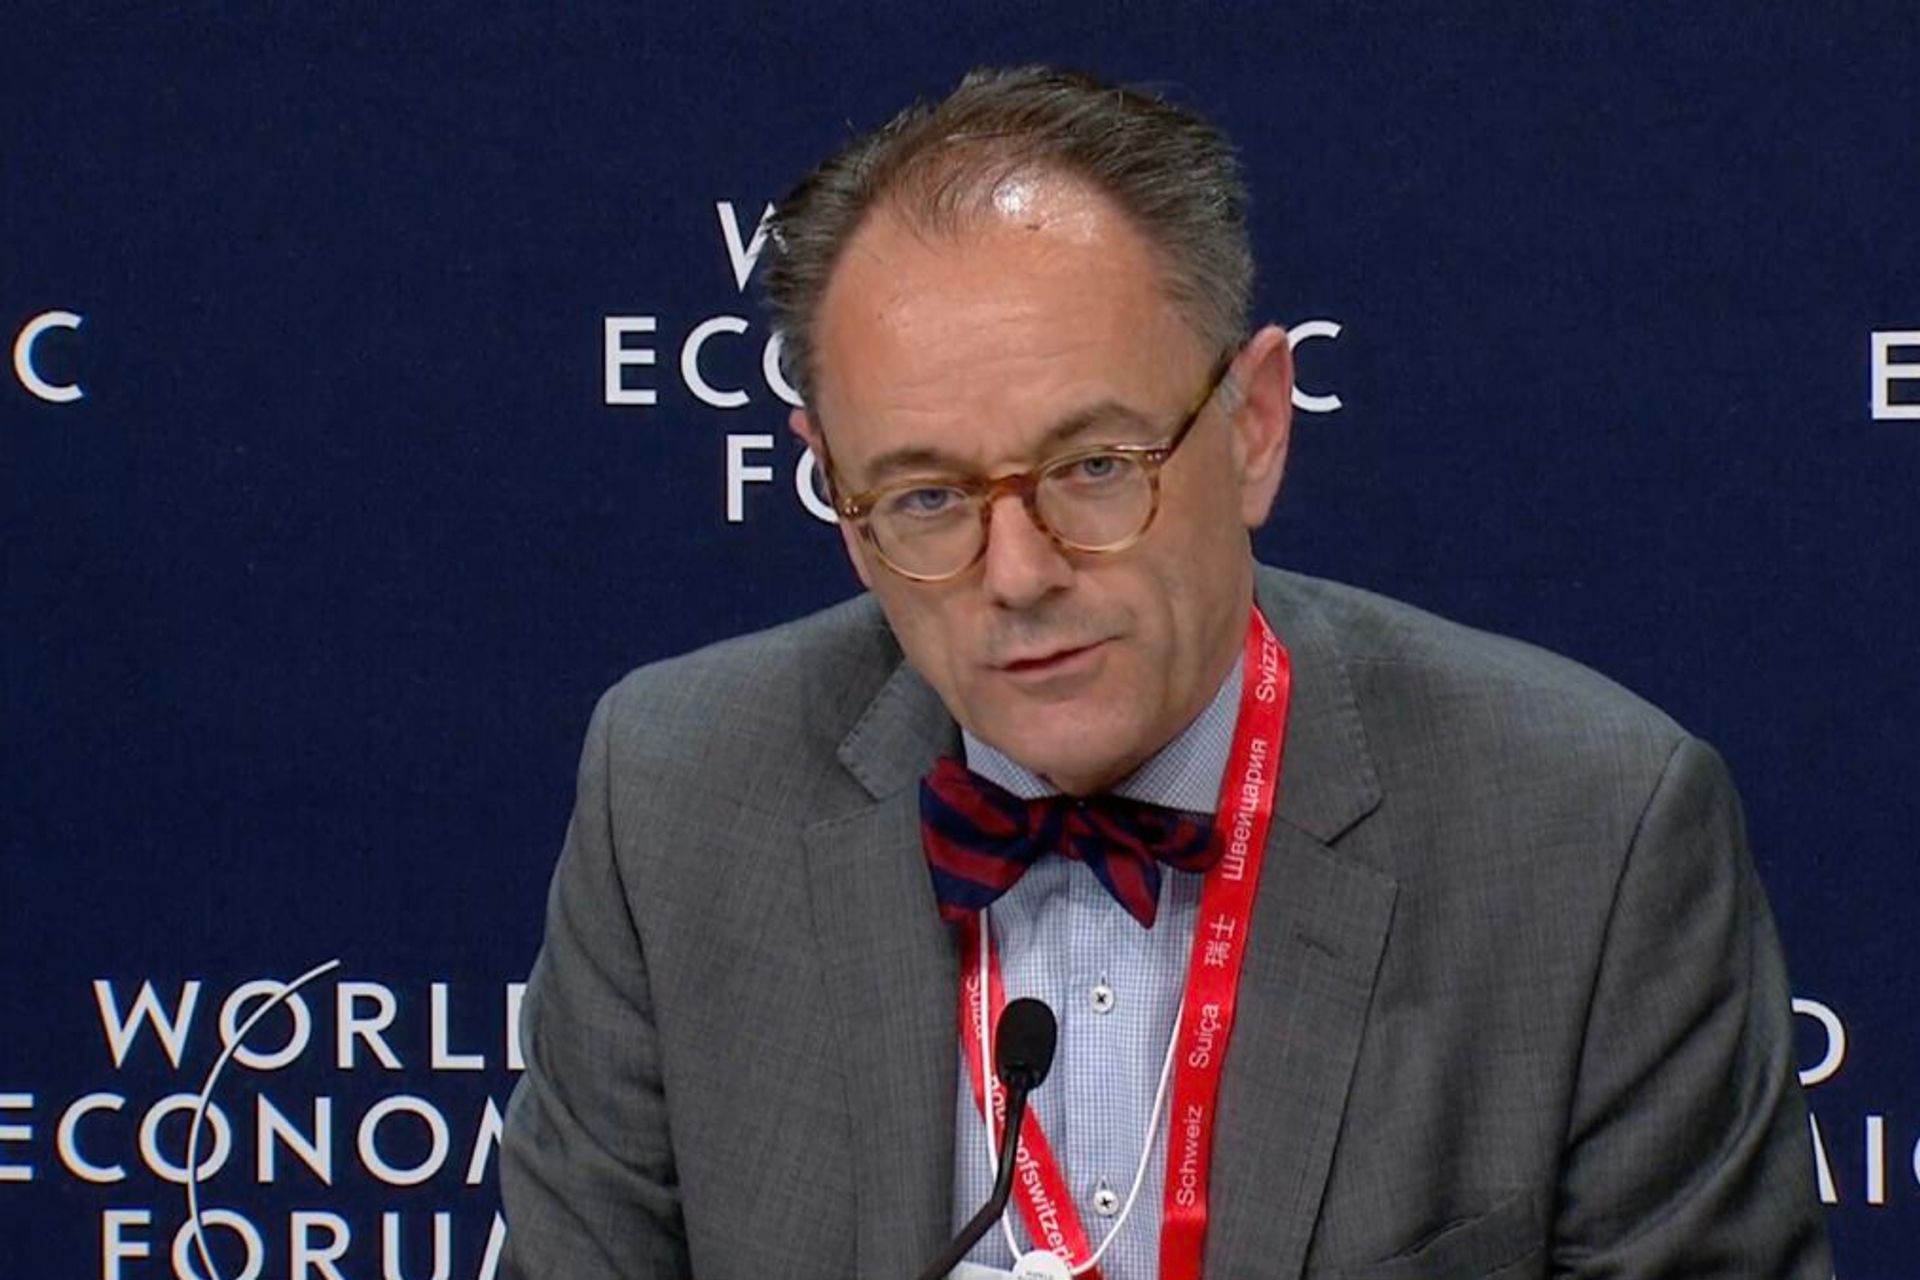 Benedikt Wechsler è Ambasciatore e Capo della Divisione Digitalizzazione del Dipartimento Federale degli Affari Esteri (DFAE) della Confederazione Svizzera